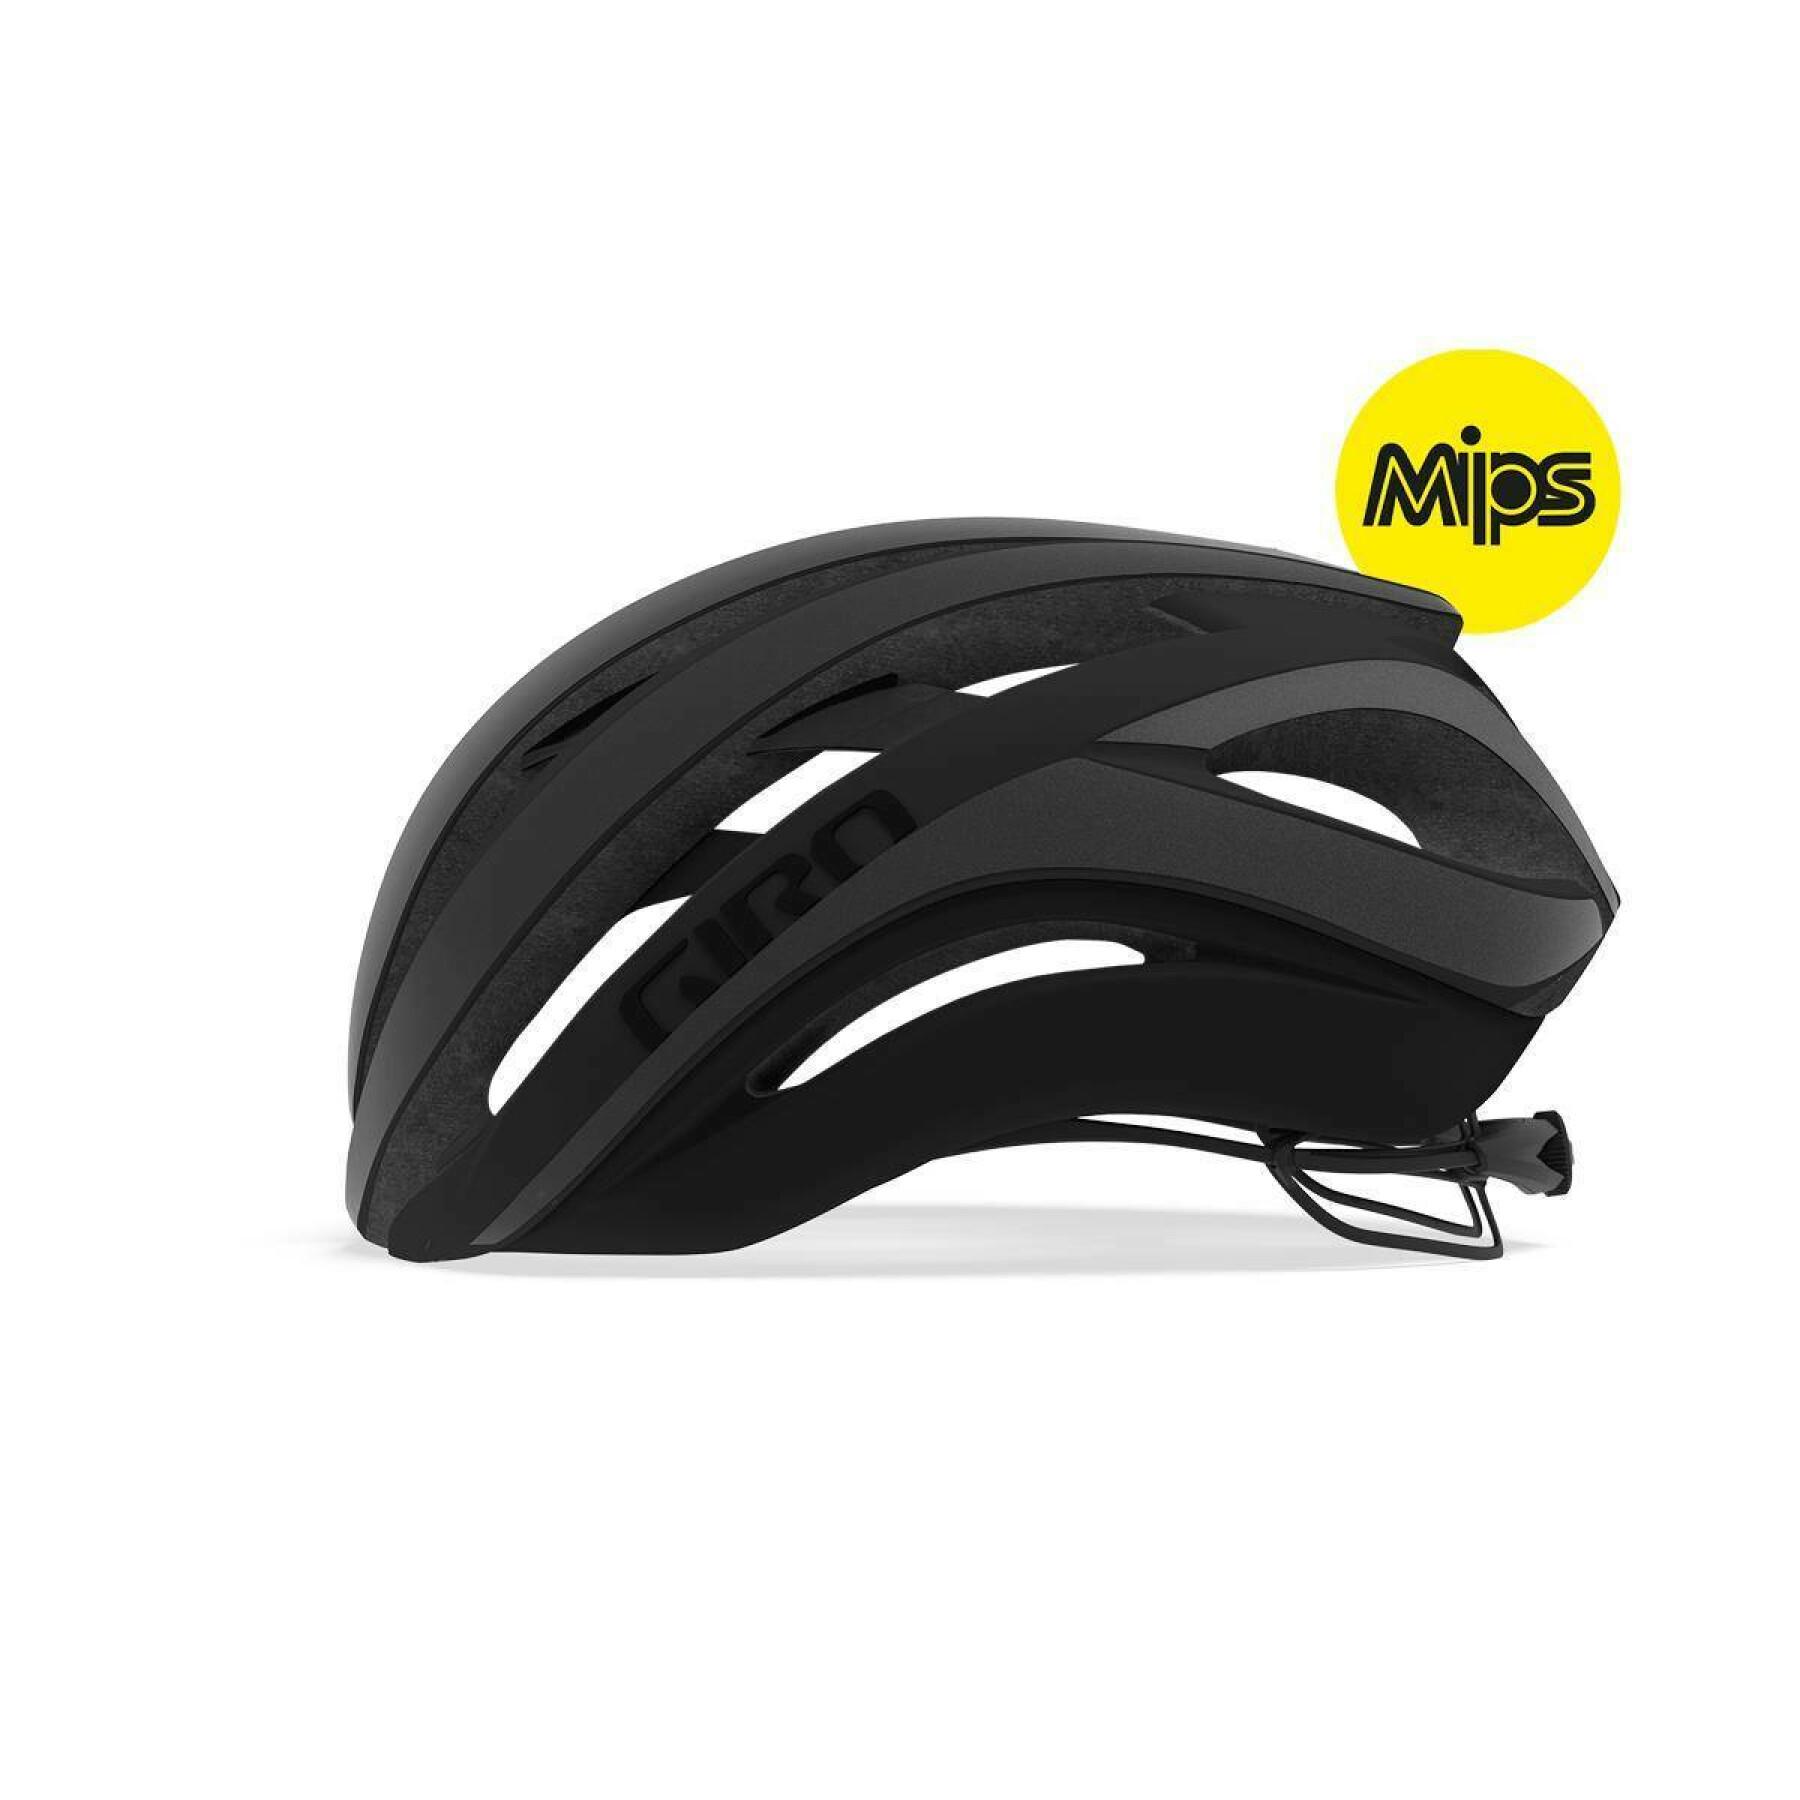 Bike helmet Giro Aether Mips